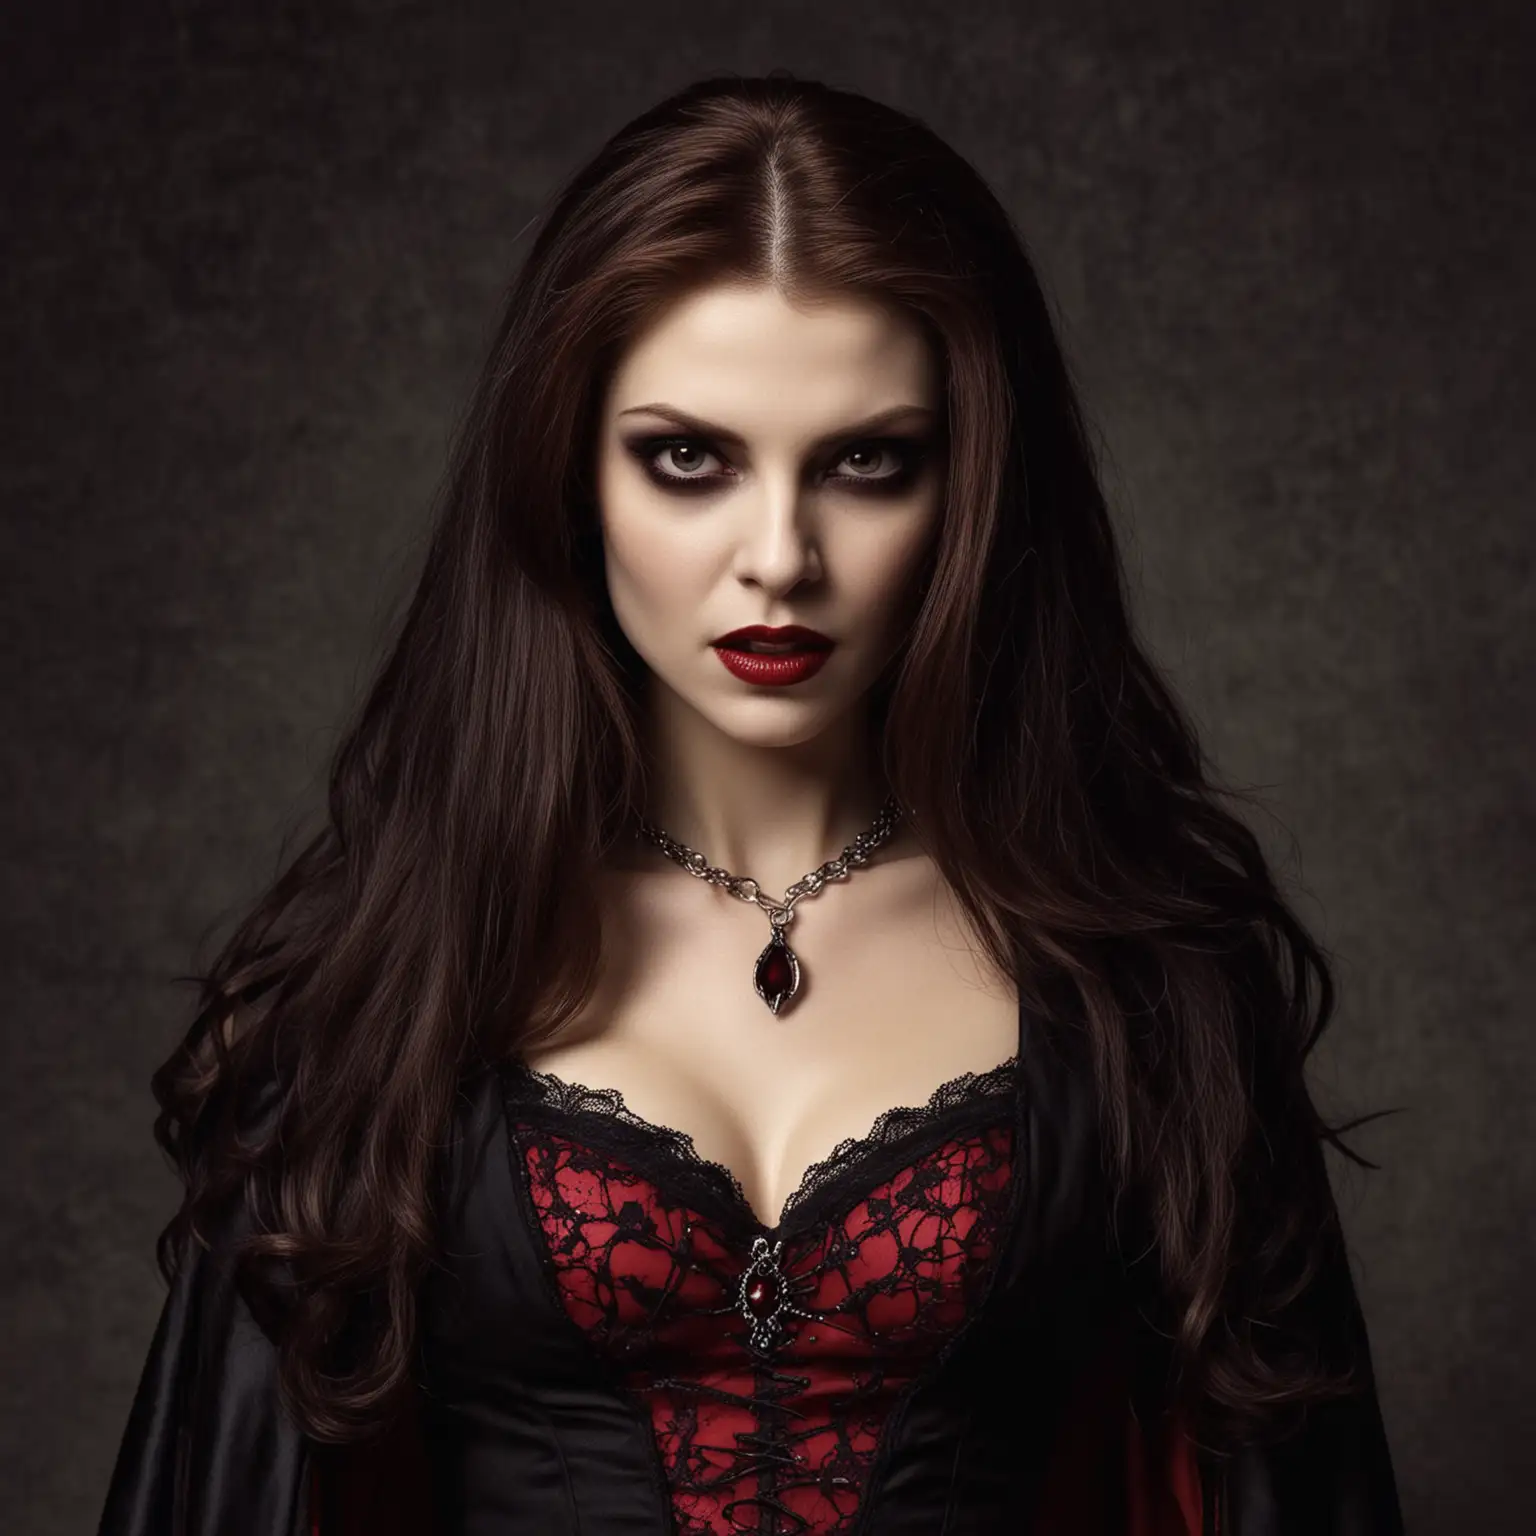 Donna Vampire Elegant Vampire Woman in the Moonlight